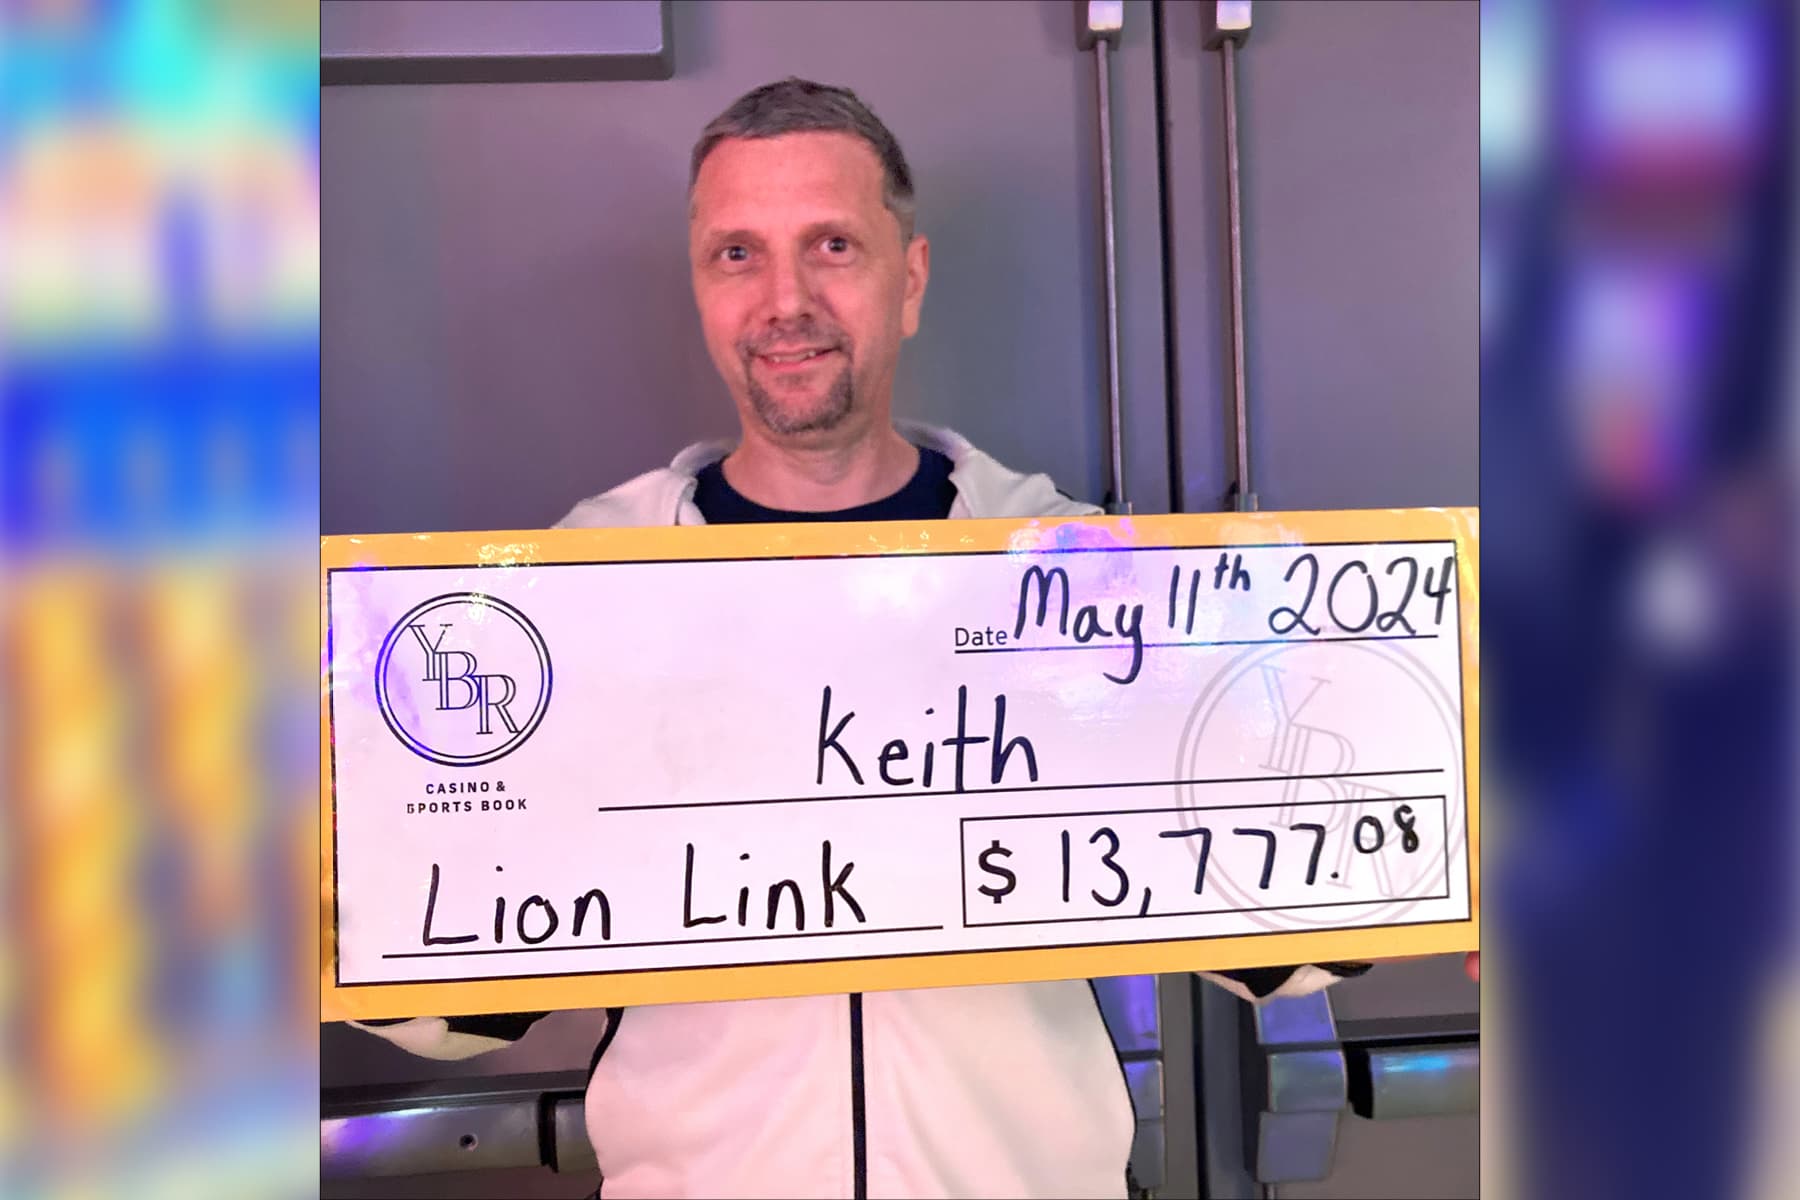 Keith won $13,777